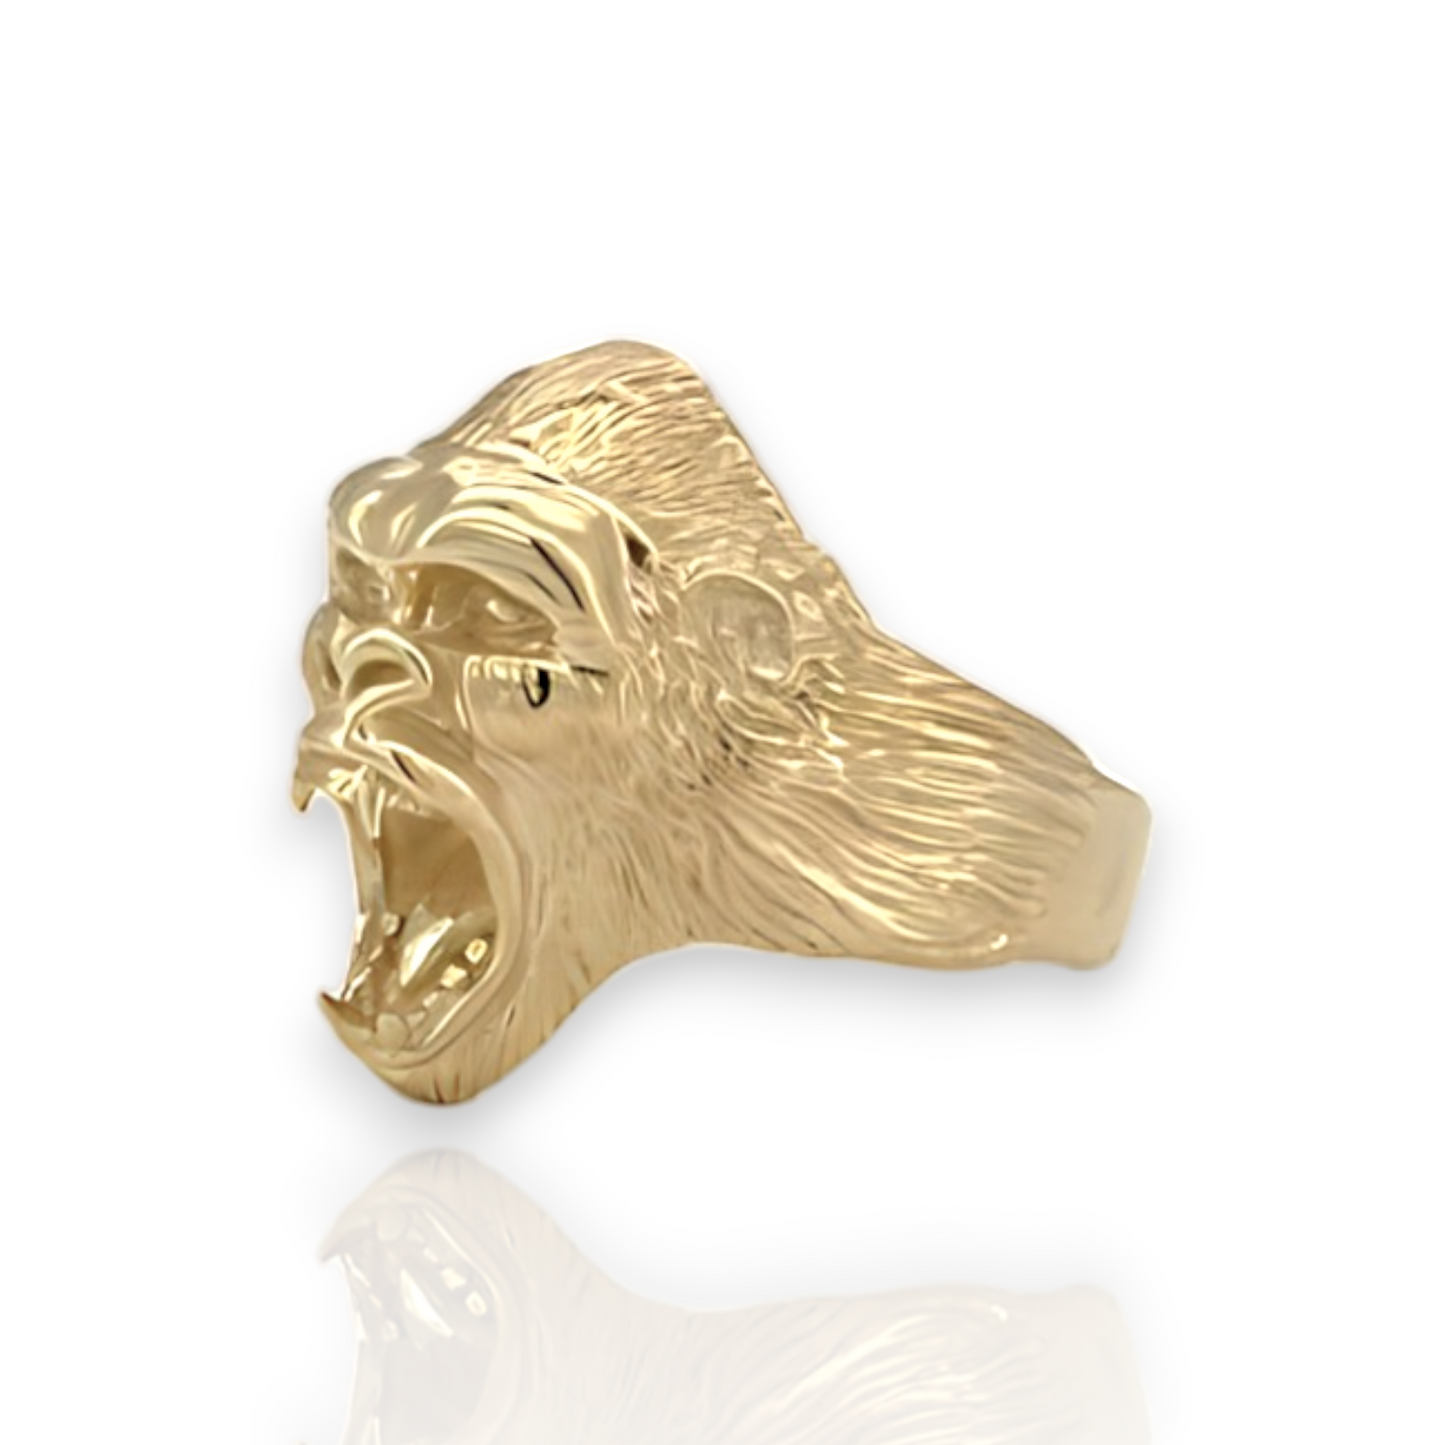 Screaming Gorilla Yellow Gold Ring  - 10K Yellow Gold